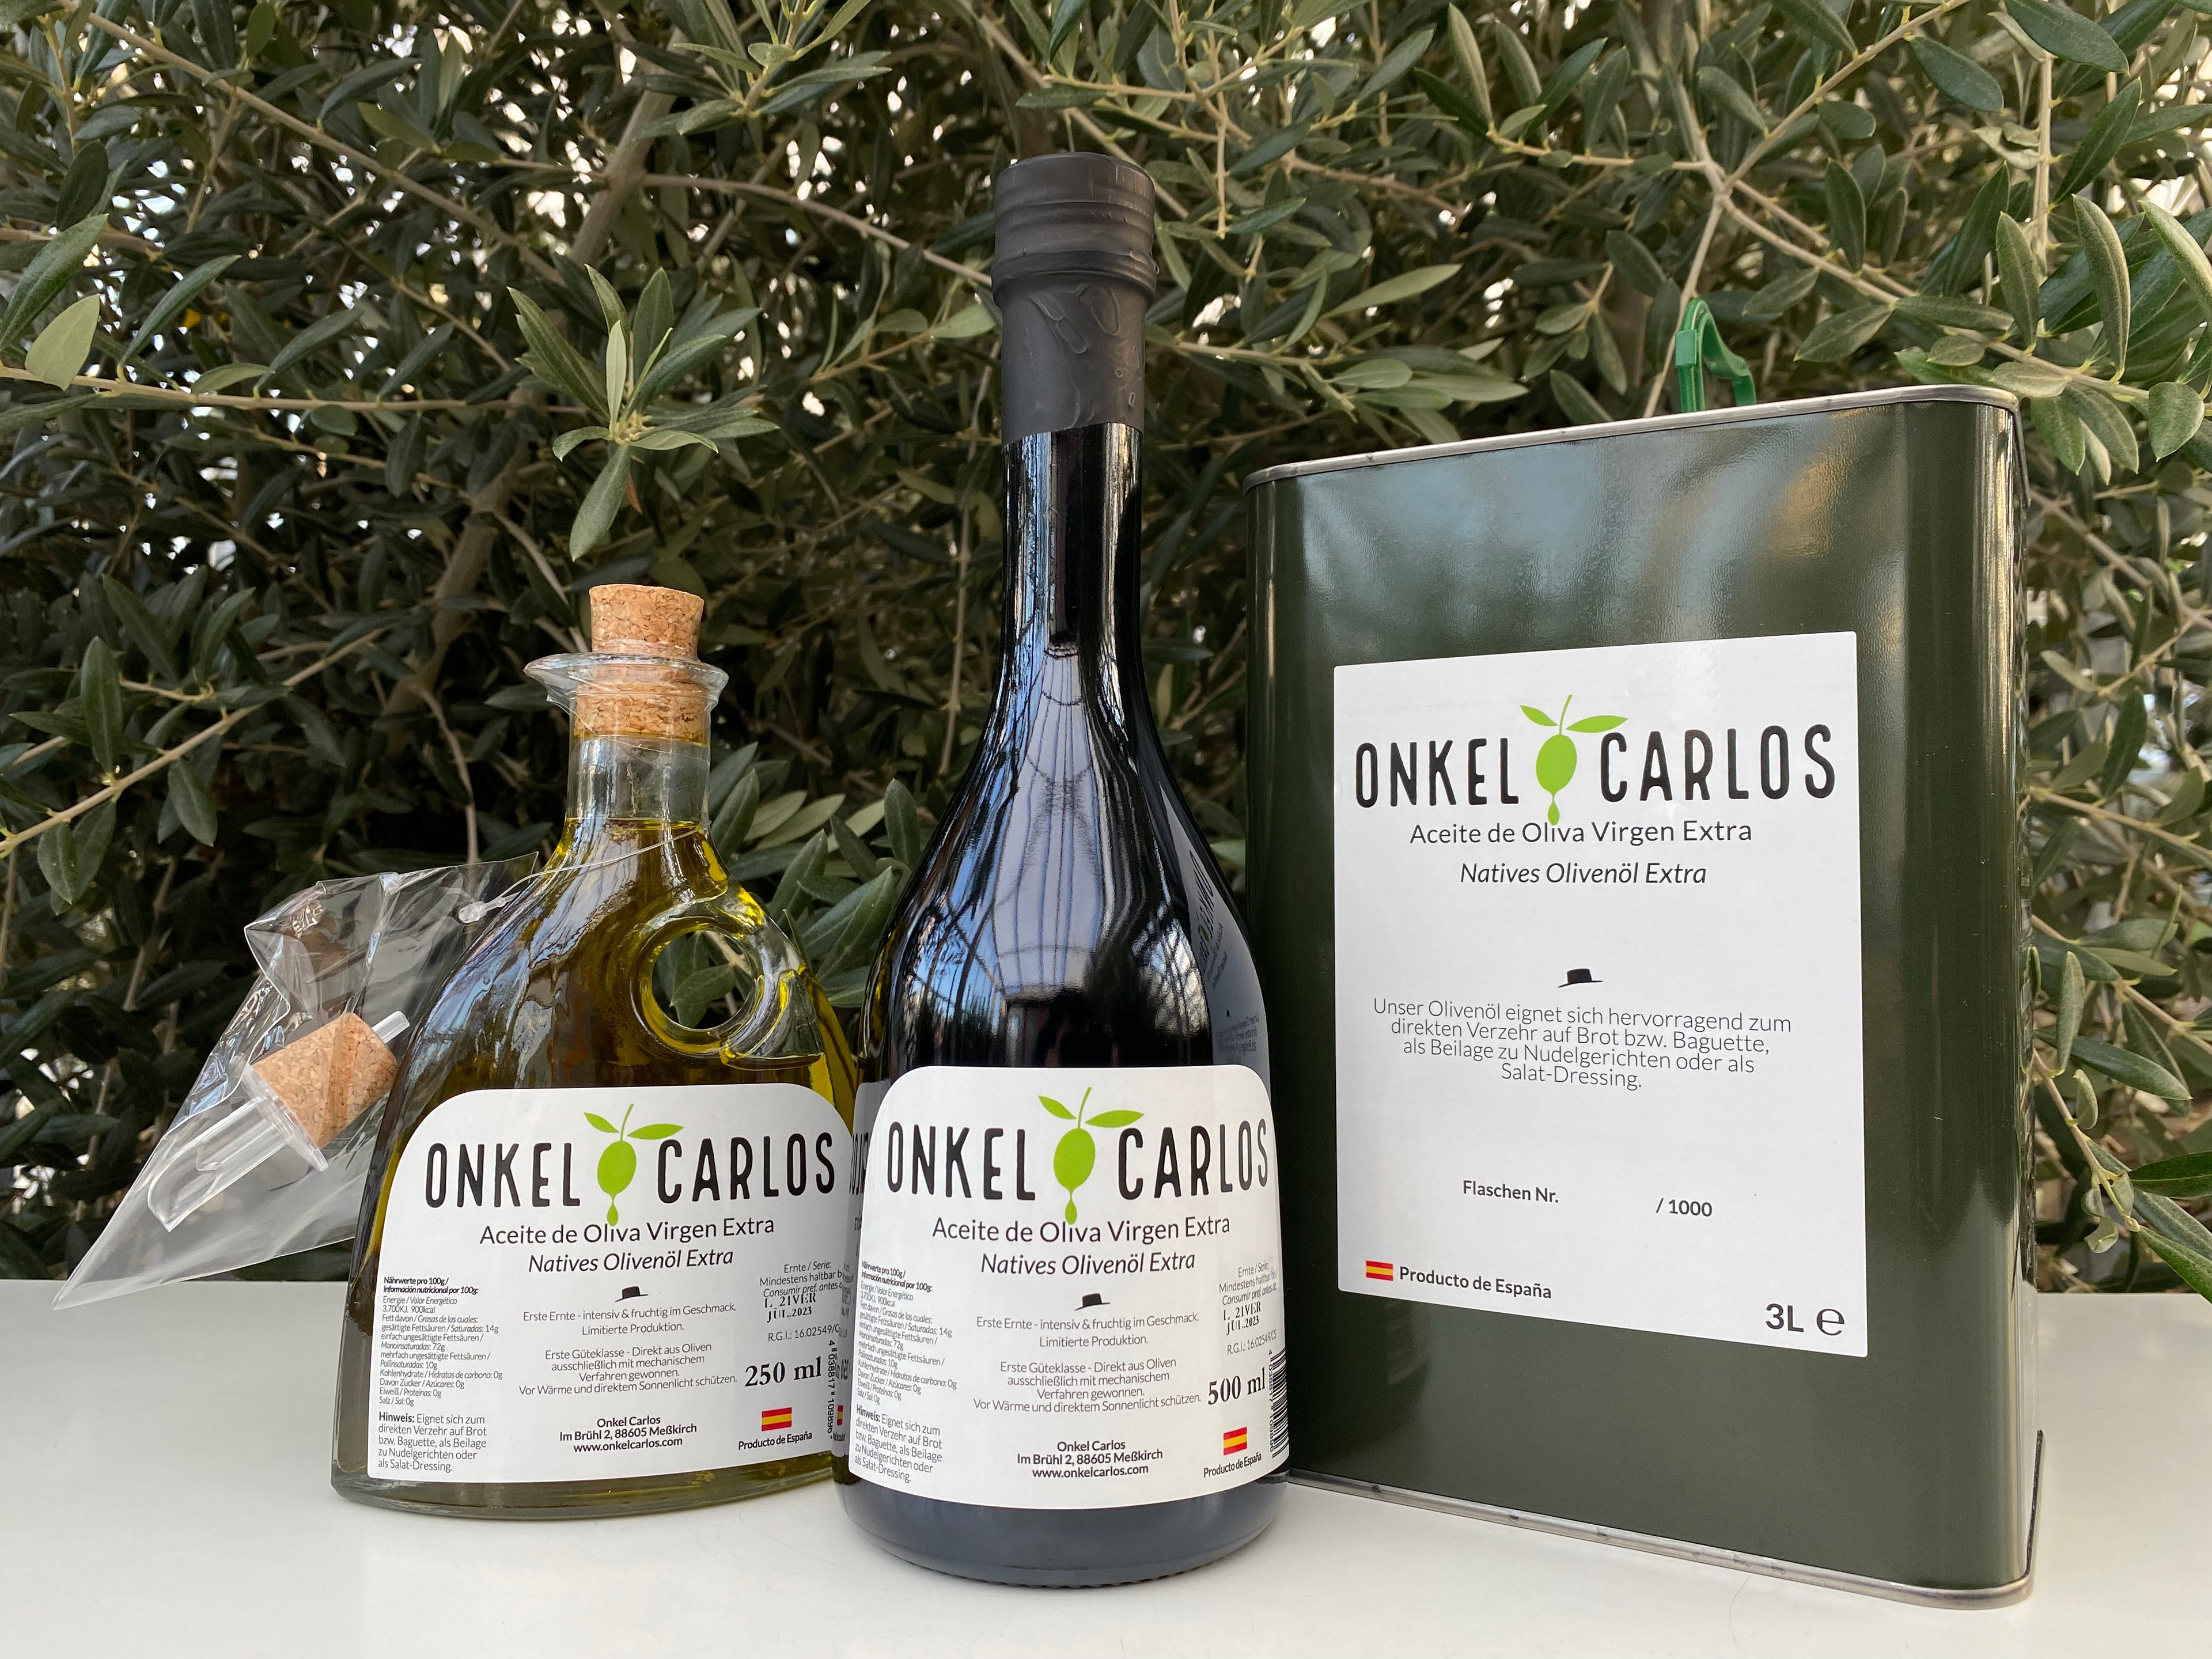 natives olivenöl extra bio Onkel Carlos Dose glasflasche Spanien grünes öl frühe Ernte, instensiv und frichtig im Geschmack. Premium oliven öl kalt extraktion, traditional. Gutes oliven oel. 5Liter 3 Liter 500ml 250ml 